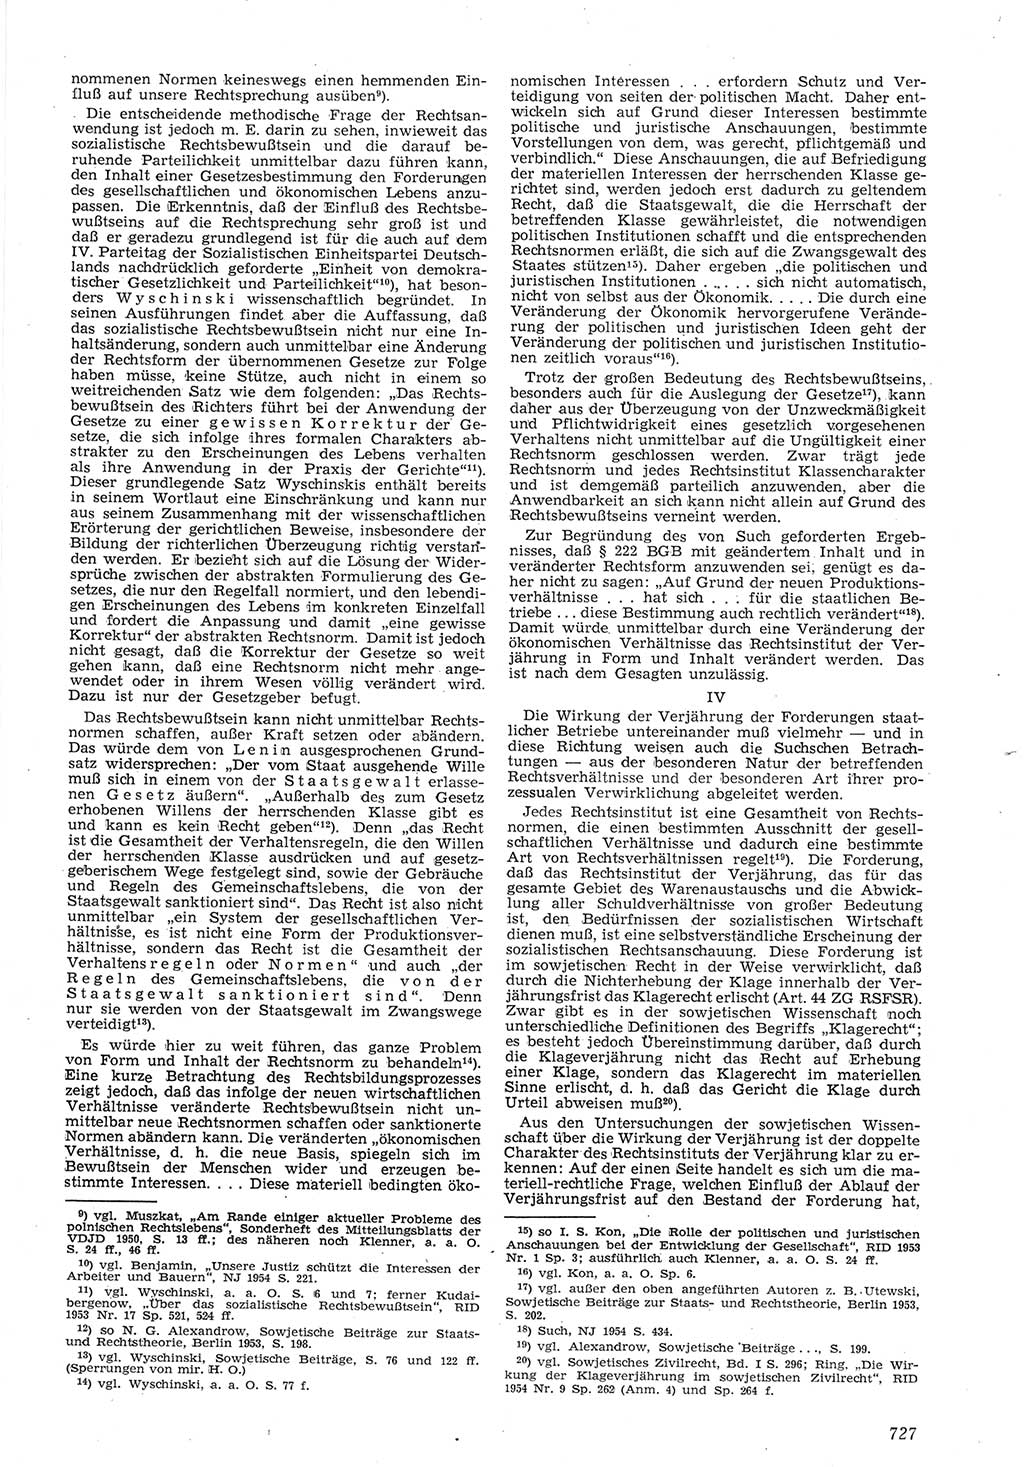 Neue Justiz (NJ), Zeitschrift für Recht und Rechtswissenschaft [Deutsche Demokratische Republik (DDR)], 8. Jahrgang 1954, Seite 727 (NJ DDR 1954, S. 727)